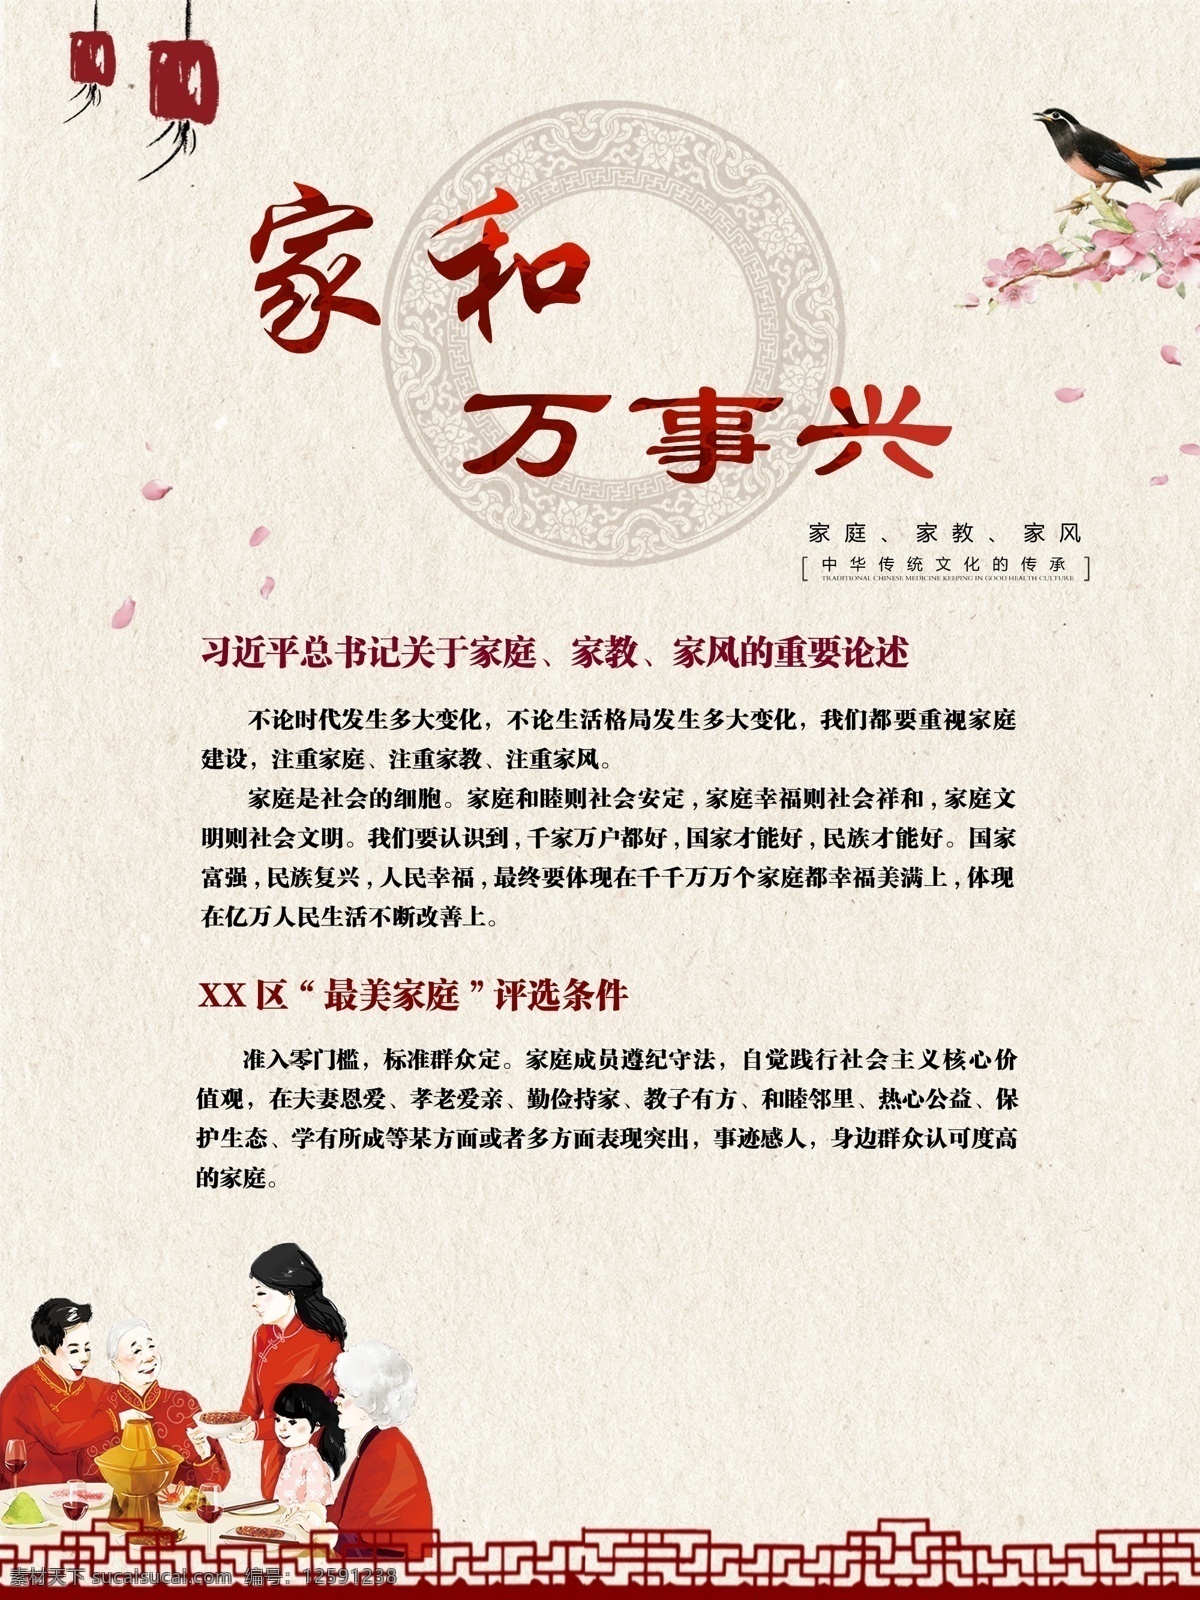 家和万事兴 宣传单 社区 家和 创文 古典 复古 中国风 最美家庭 家教 家风